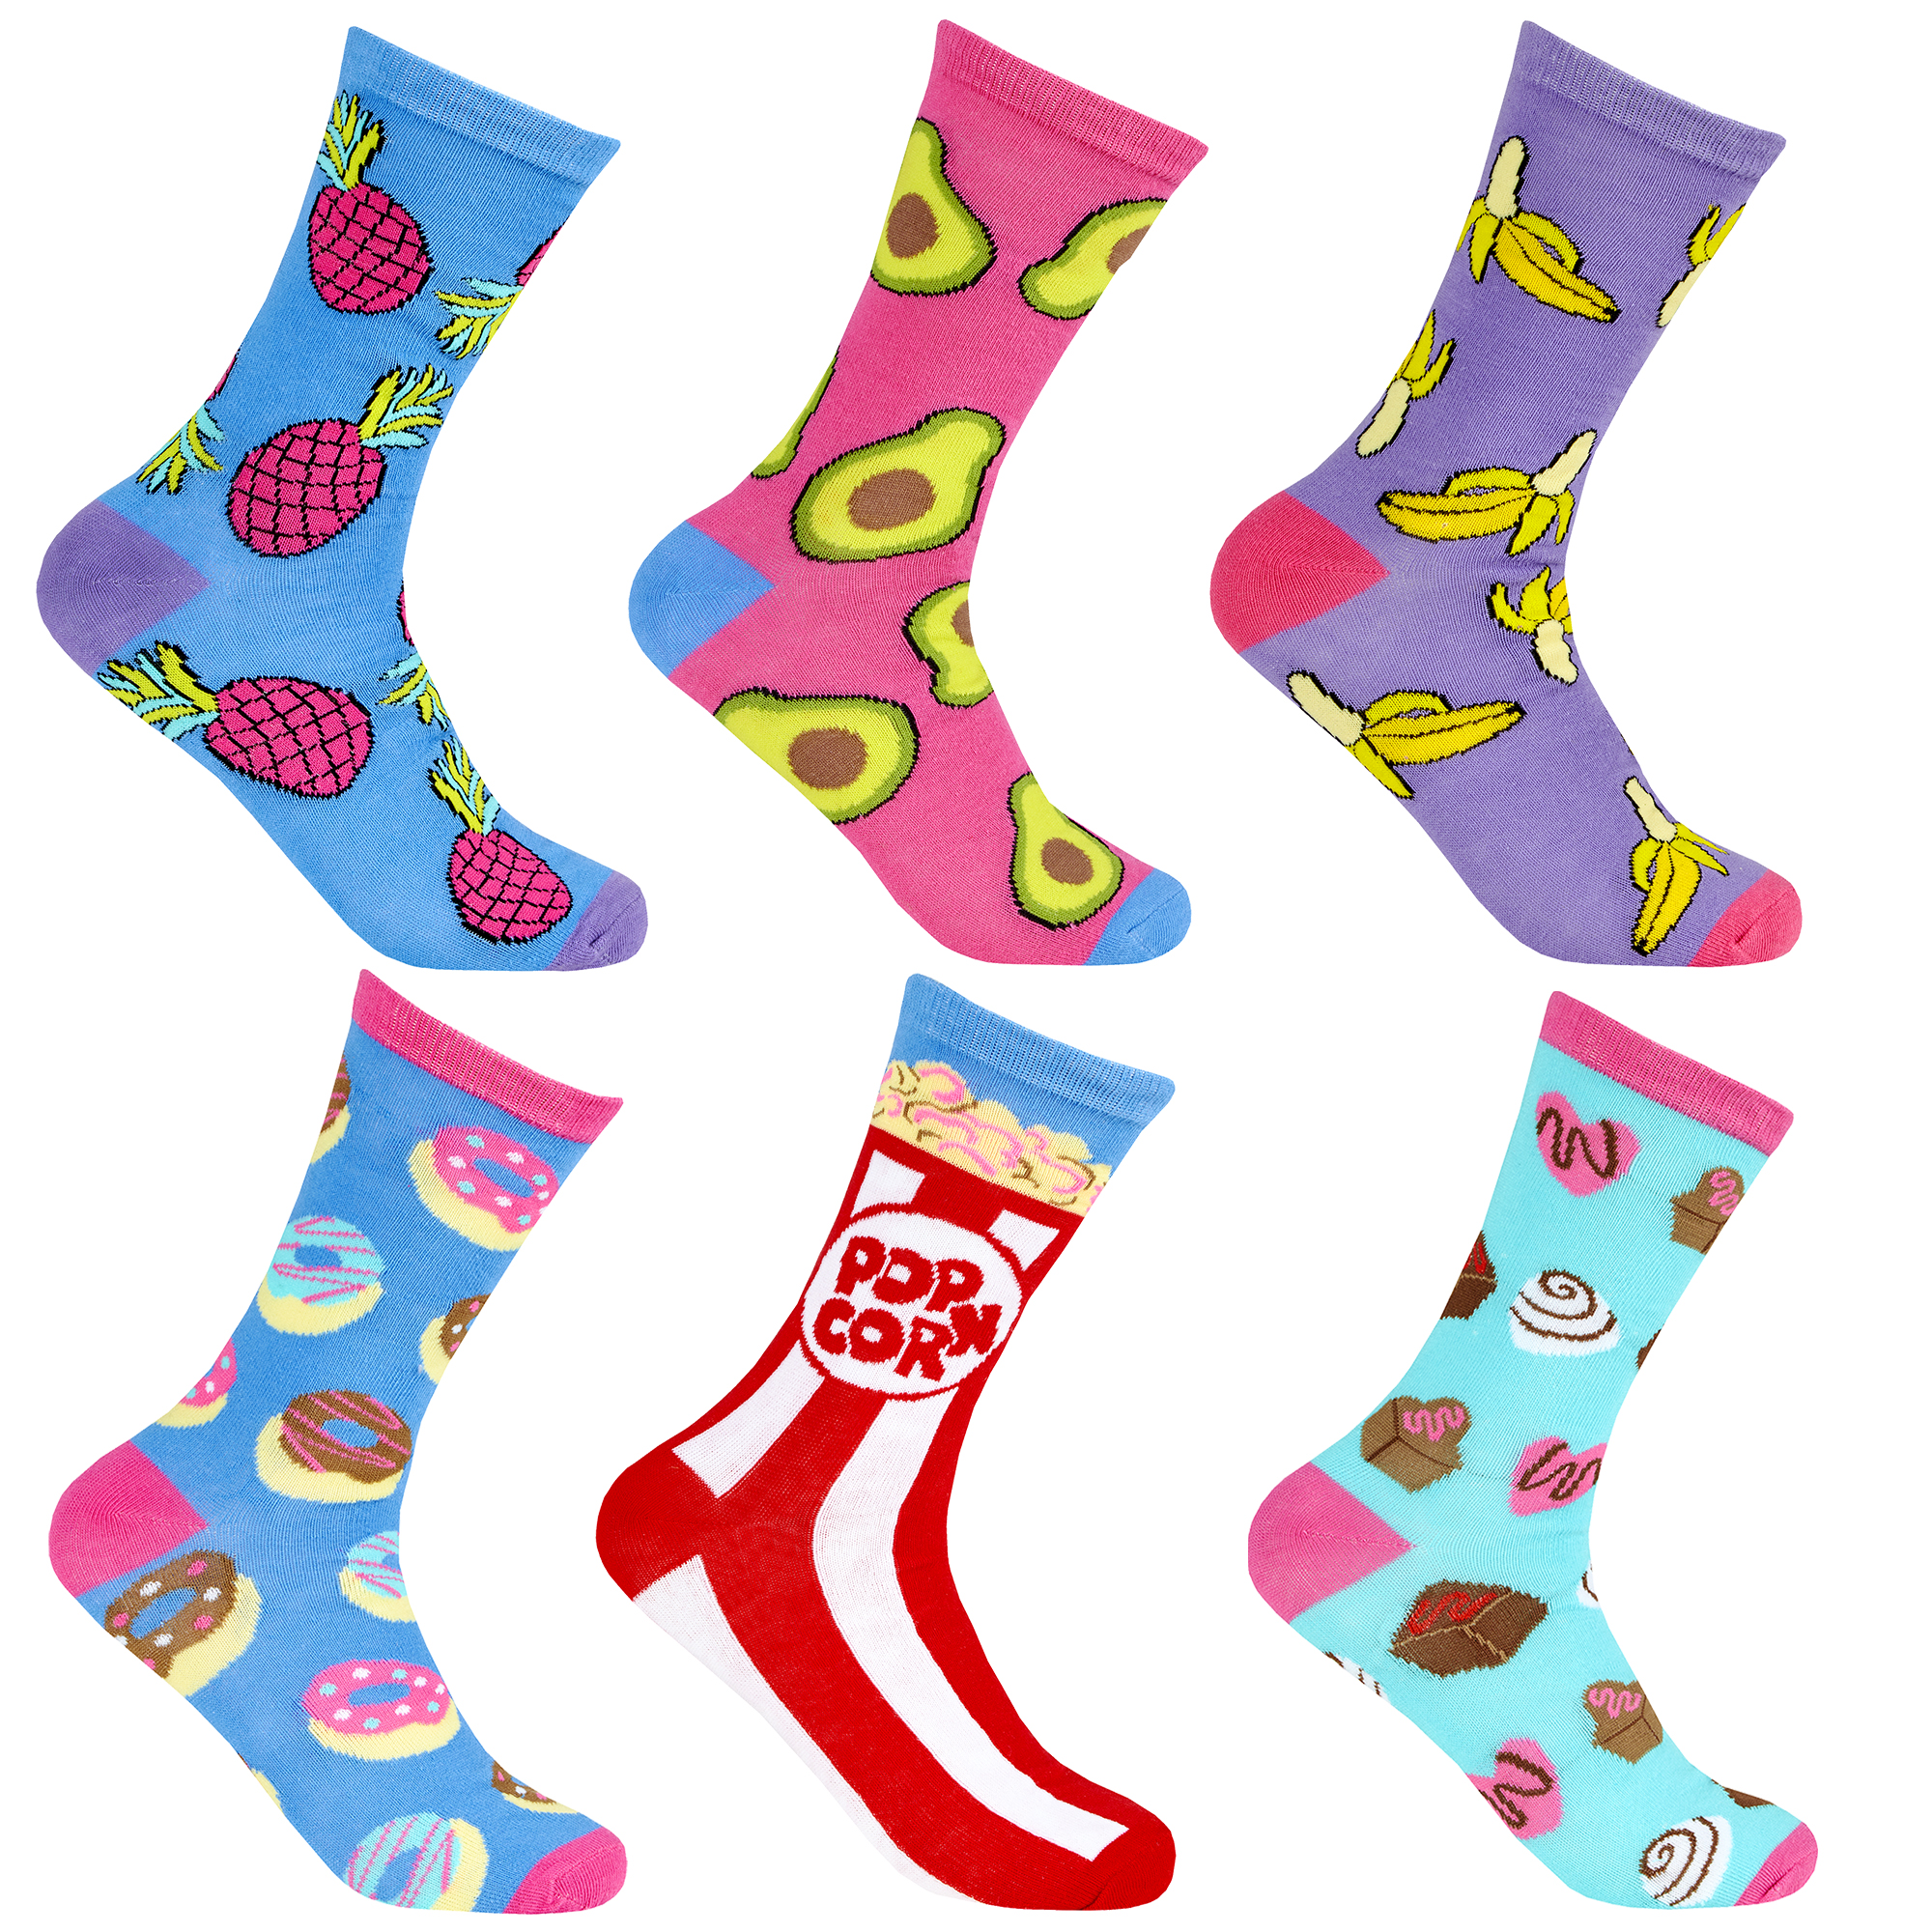 Happy Socks Grey Snake Skin Design Quirky Socks UK 4-7 Pair Women's Unisex Socks 